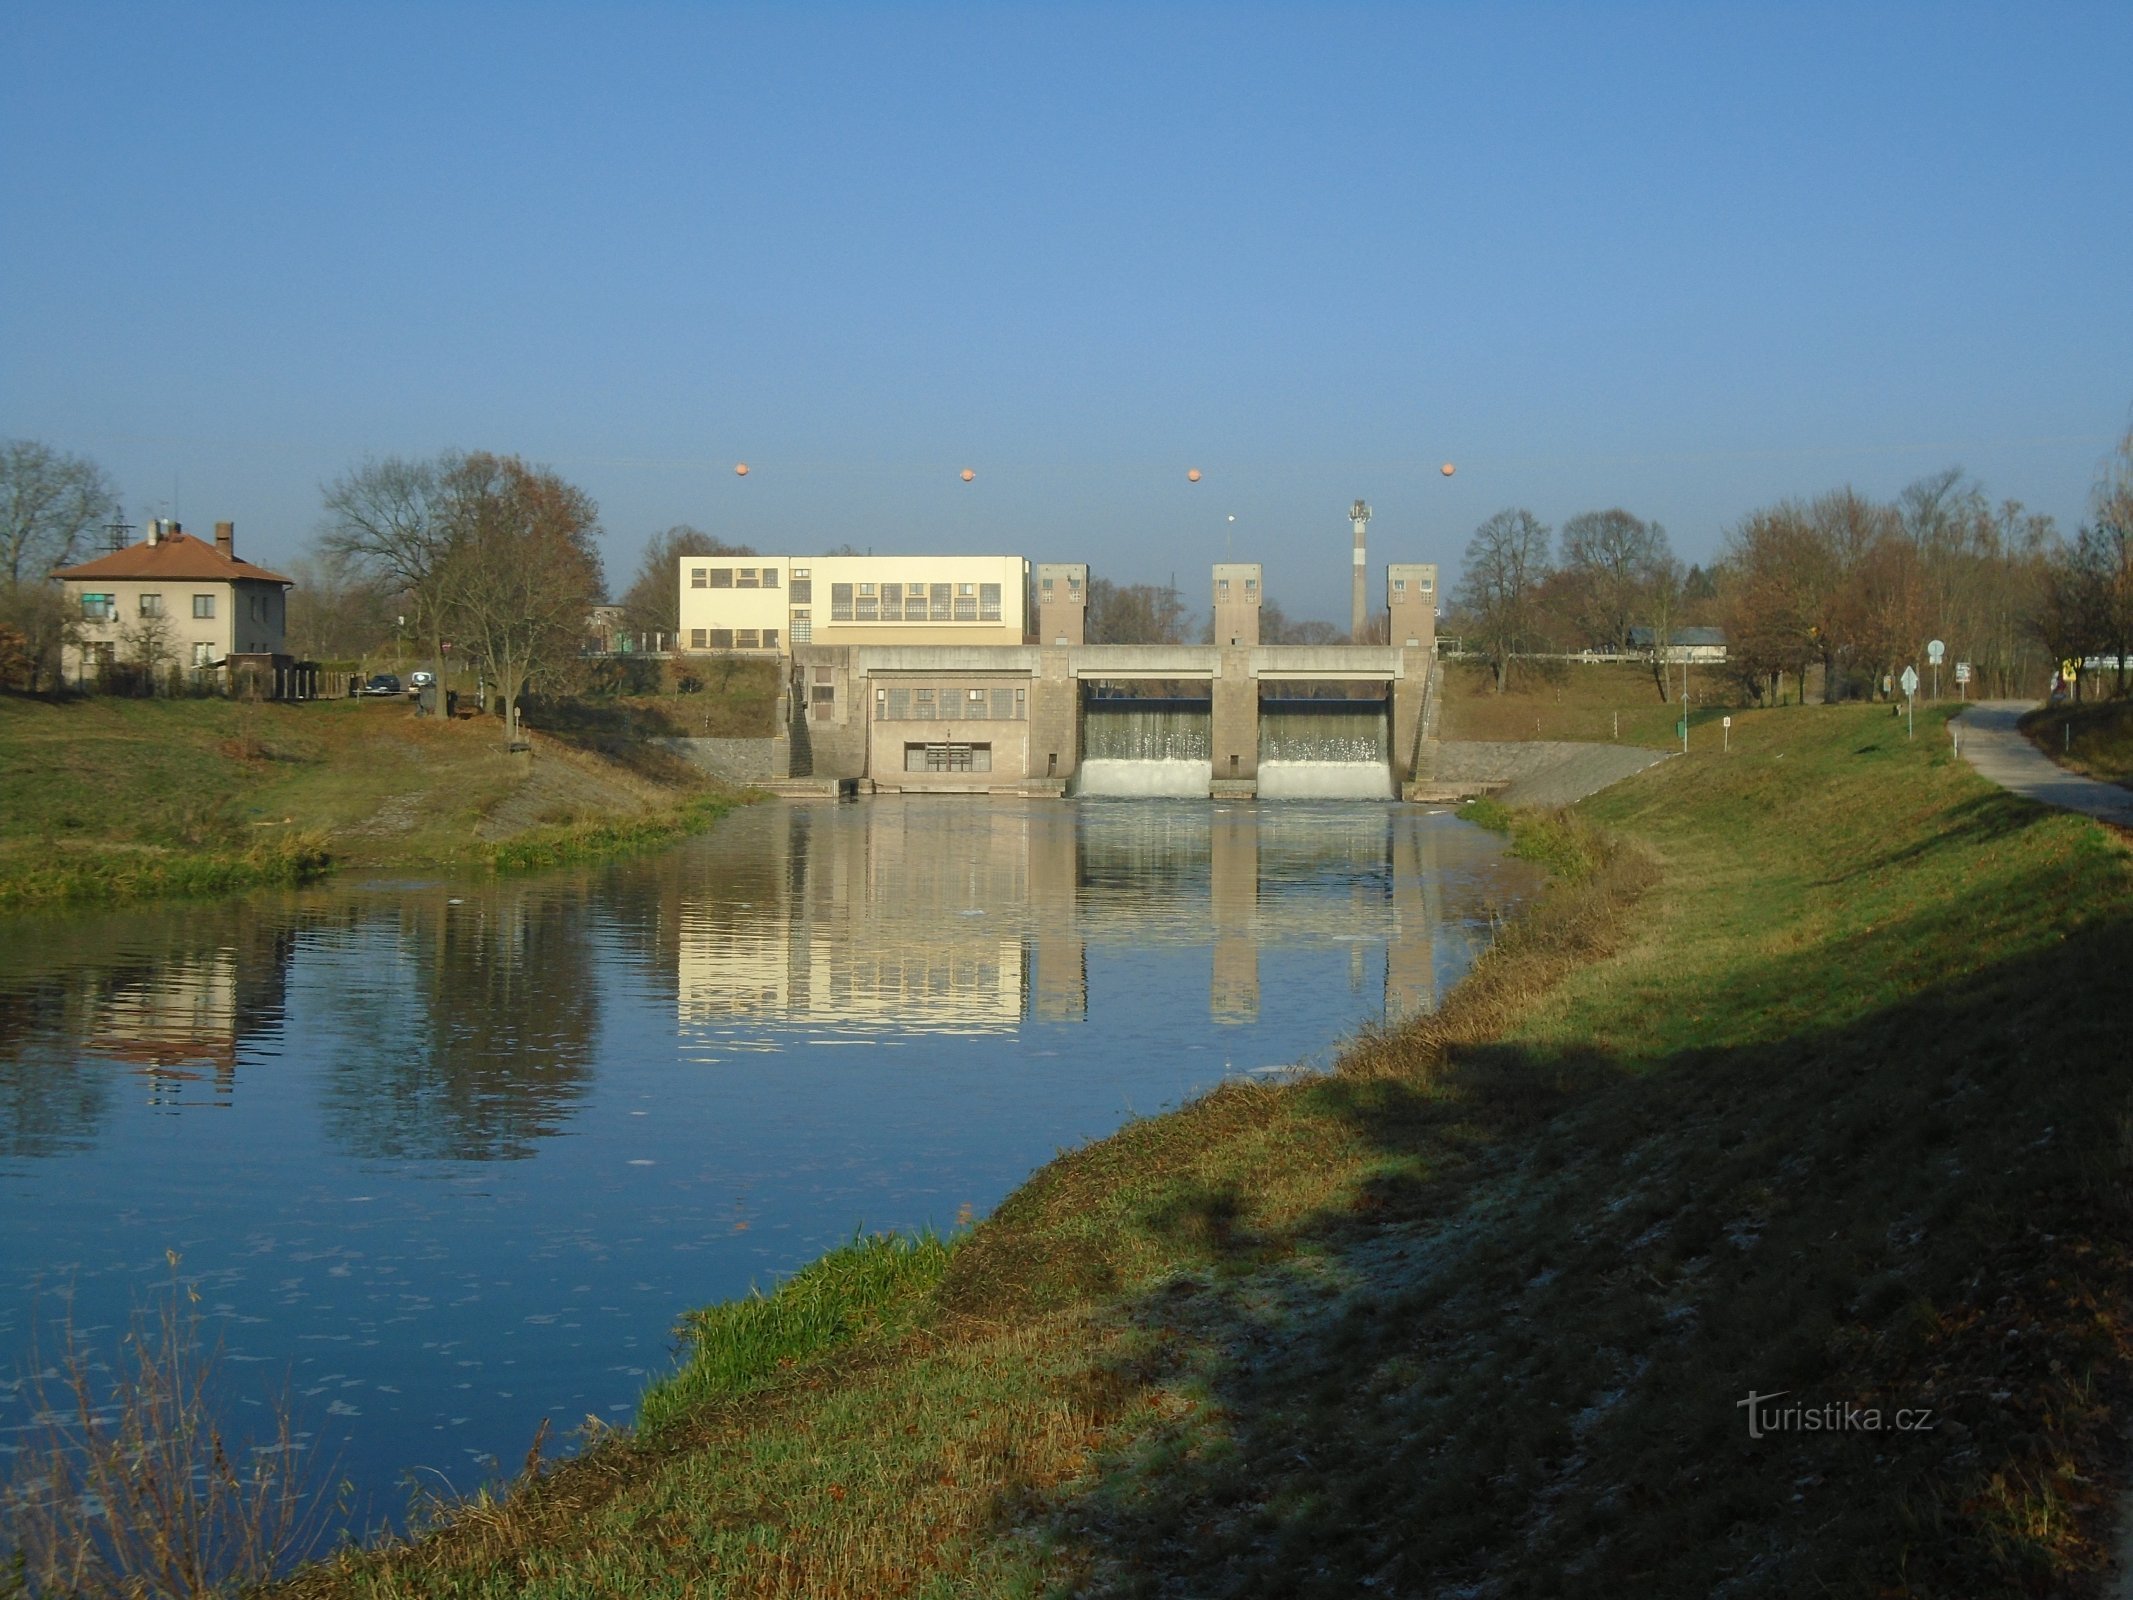 Nhà máy thủy điện nhỏ (Předměřice nad Labem)